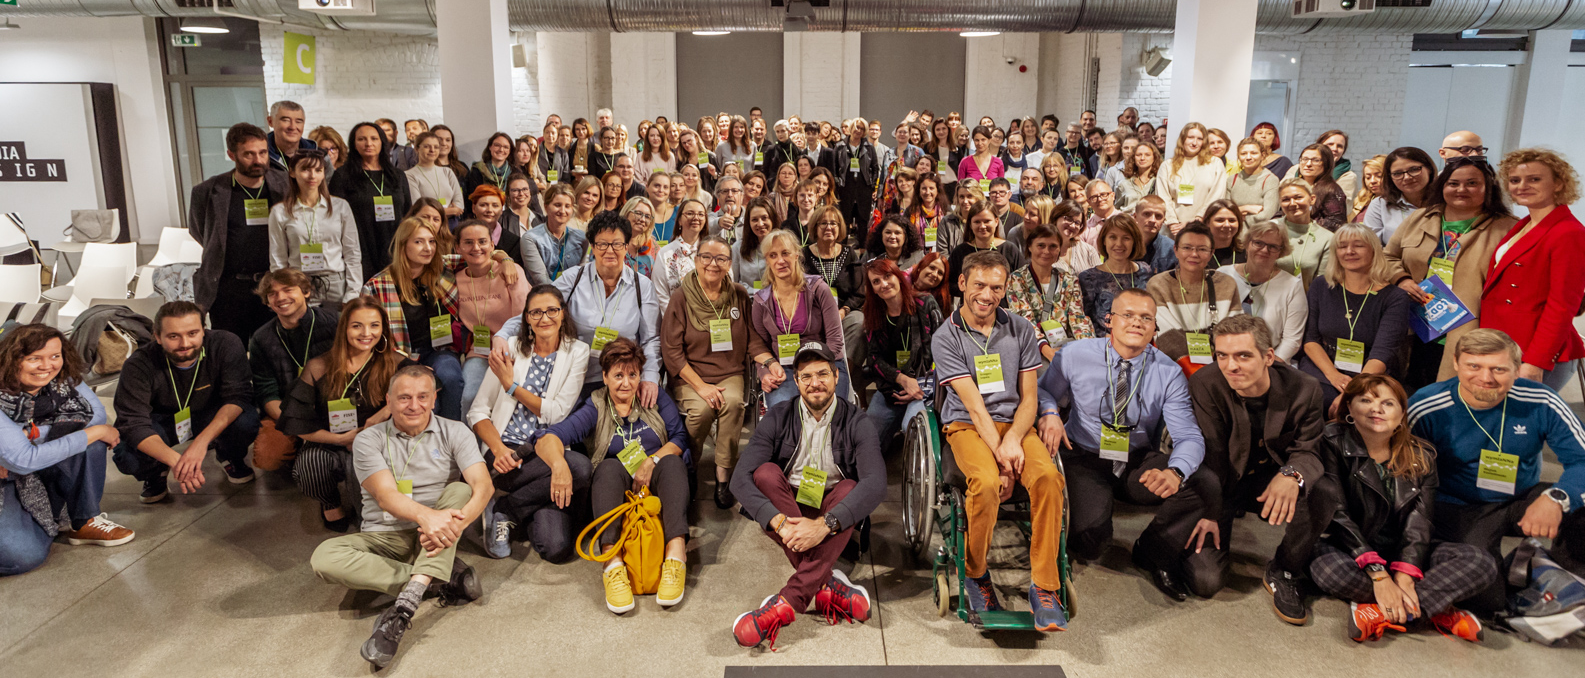 Zdjęcie grupowe przedstawiające ponad 100 osób stojących i siedzących - uczestników wydarzenia WymiaNNa z 2022 roku. Część osób się uśmiecha.